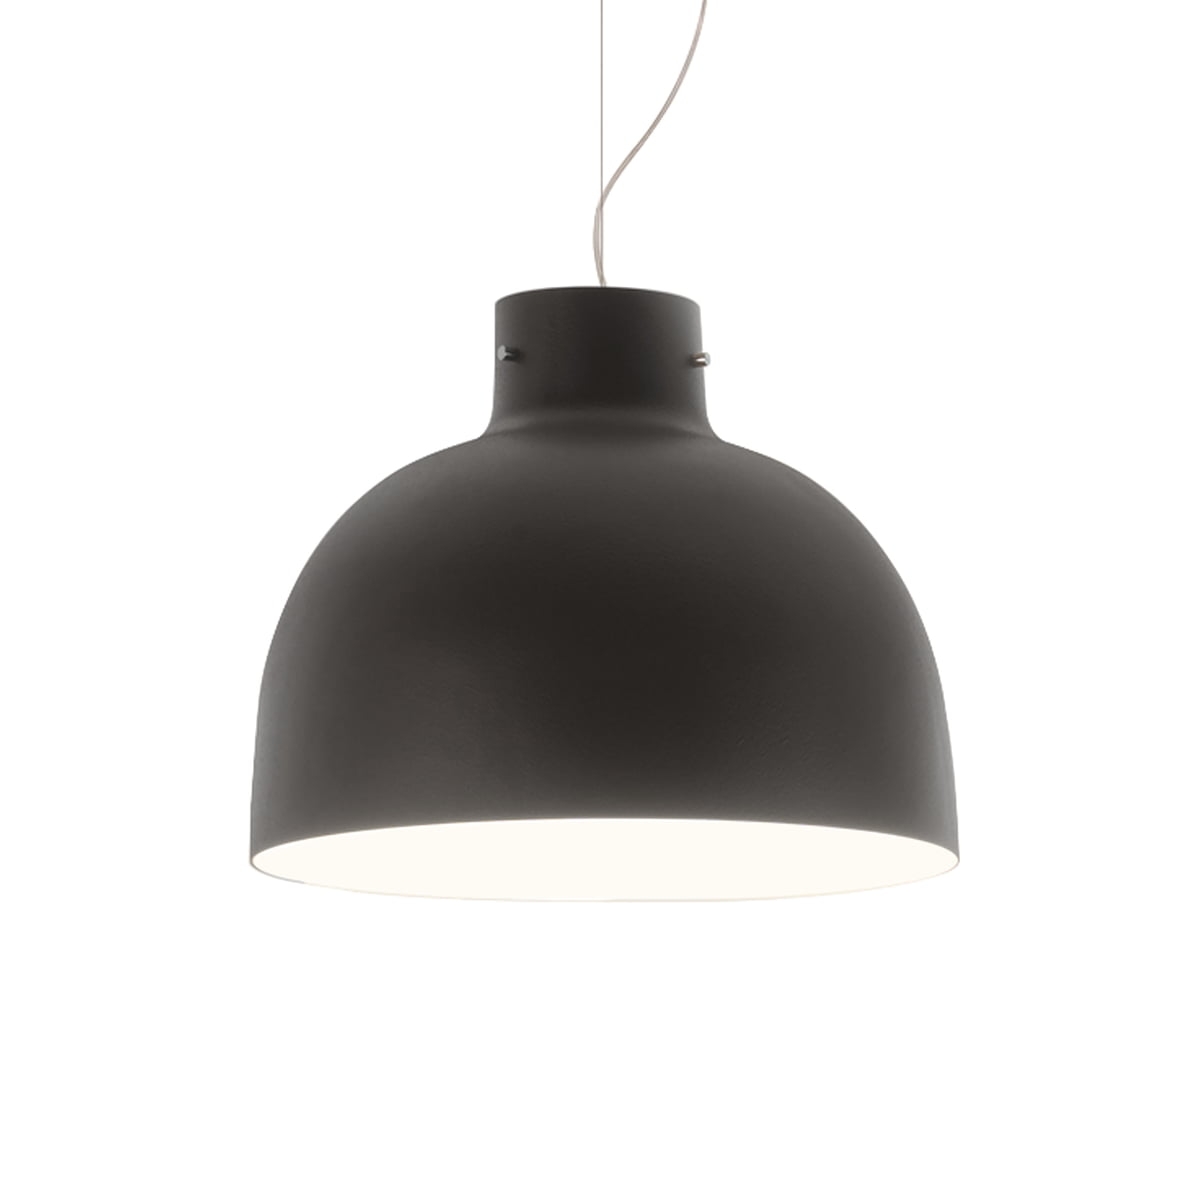 Suspensie Kartell Bellissima design Ferruccio Laviani LED 15W d50cm negru Kartell pret redus imagine 2022